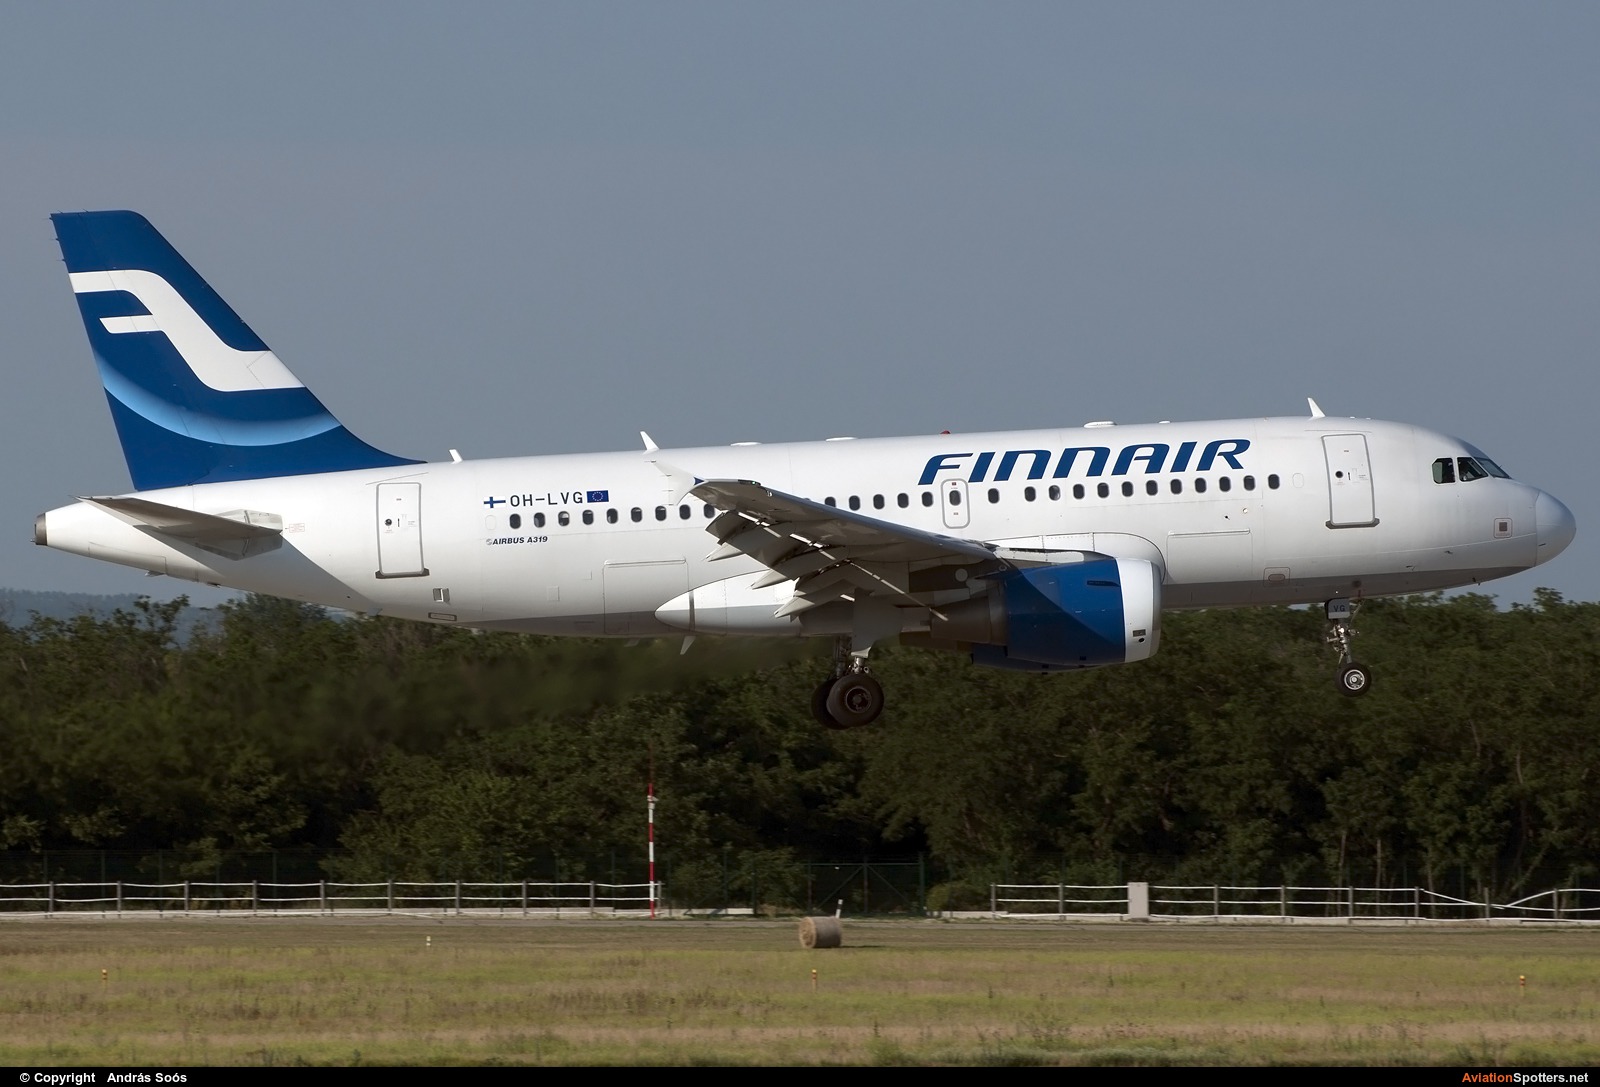 Finnair  -  A319  (OH-LVG) By András Soós (sas1965)